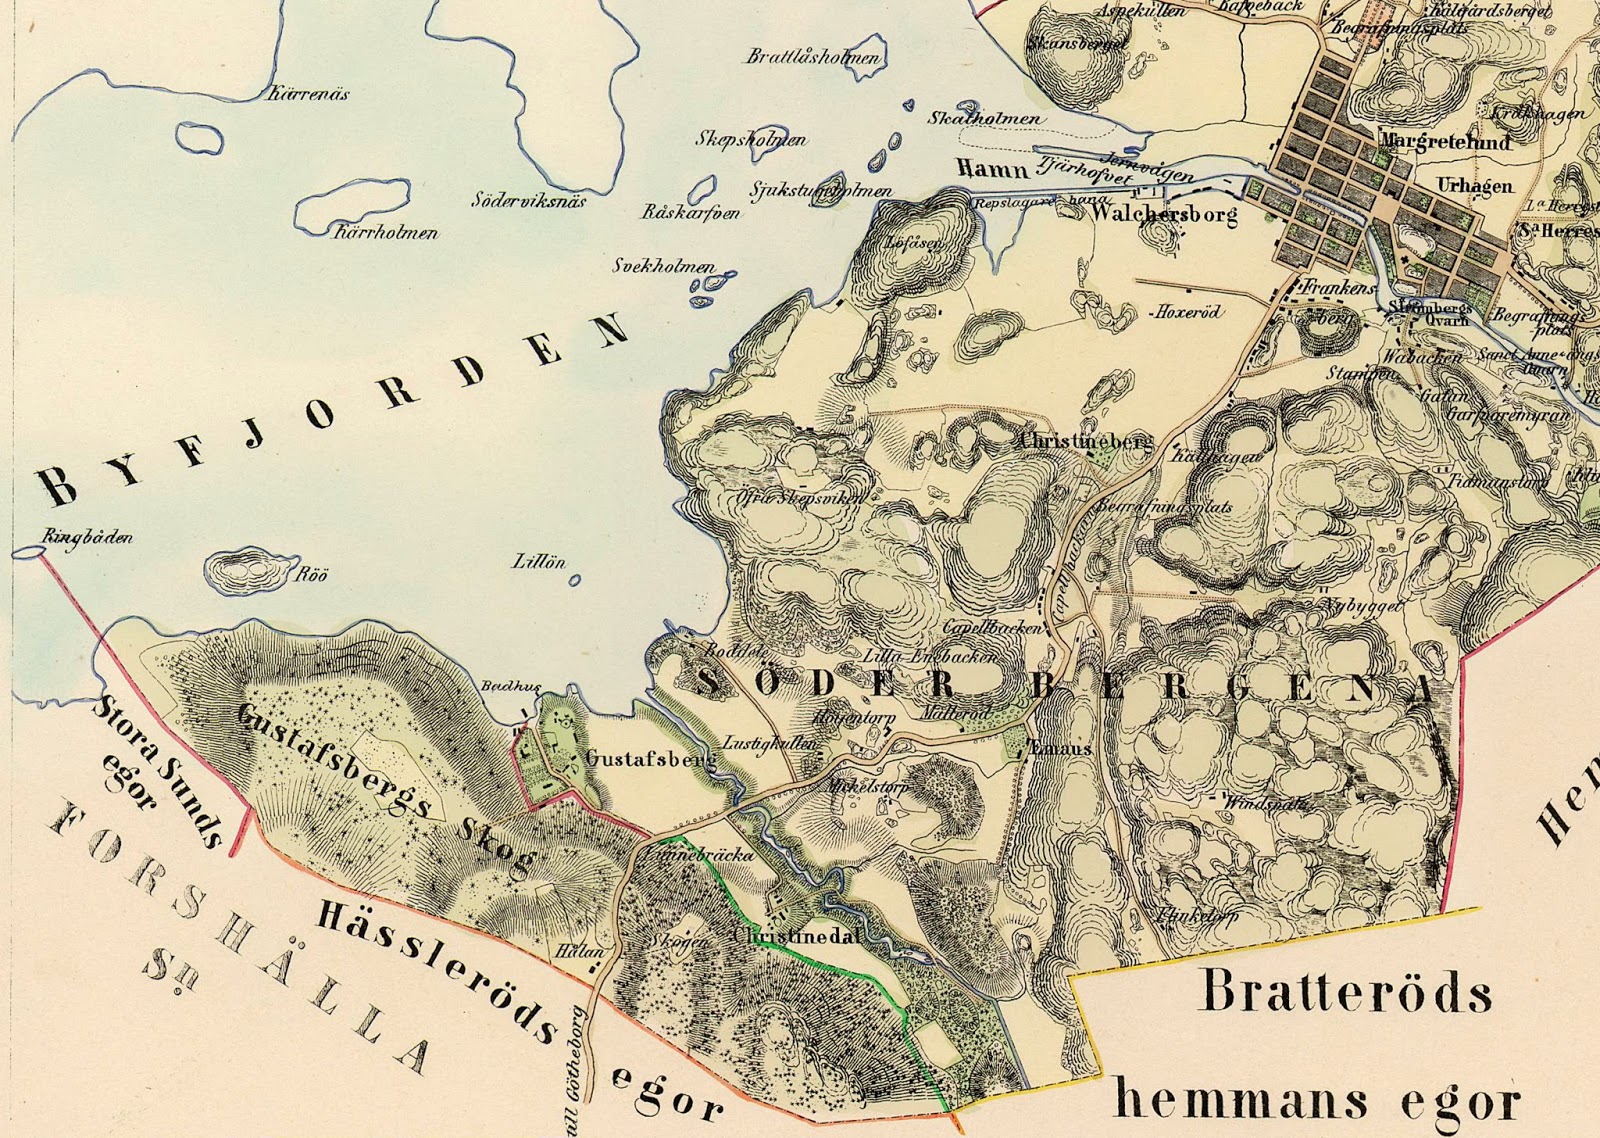 uddevallabloggen.se: Utsnitt ur 1855 års karta